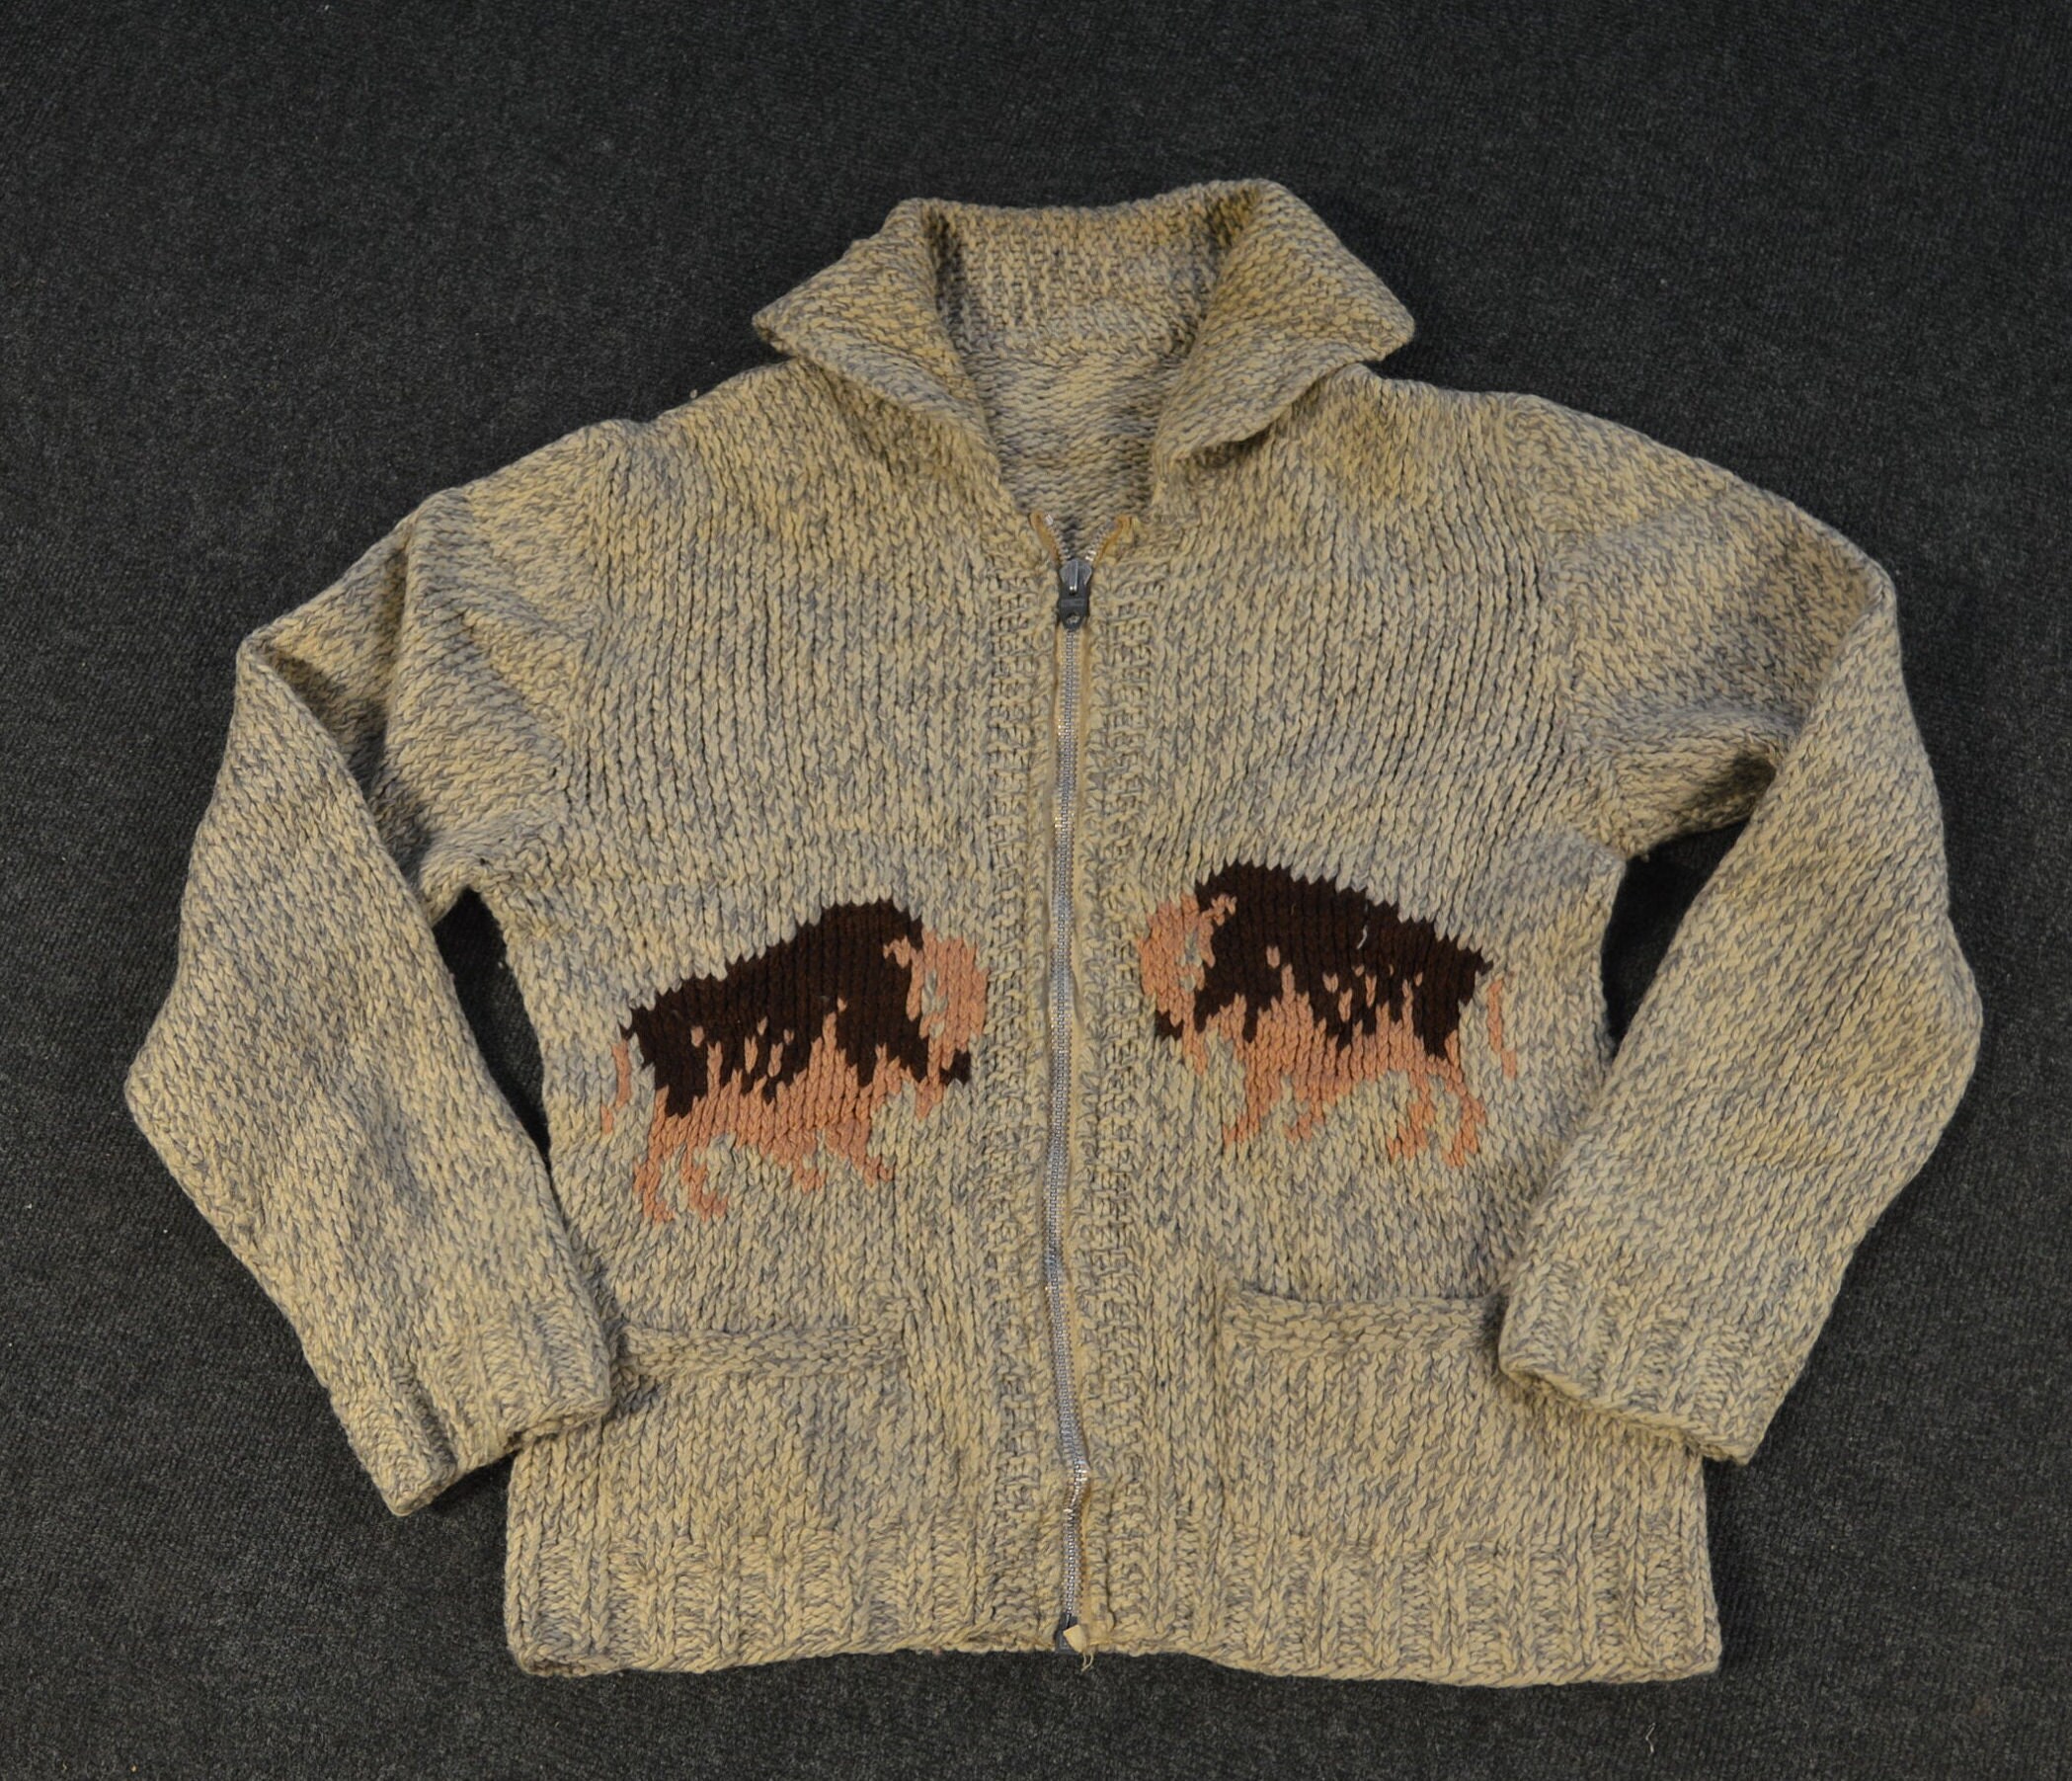 Vêtements Vêtements homme Pulls et gilets Gilets et cardigans vintage 1950s-60s Cowichan Bison Tricot à la main En laine Zipper Collared Cardigan Pull 